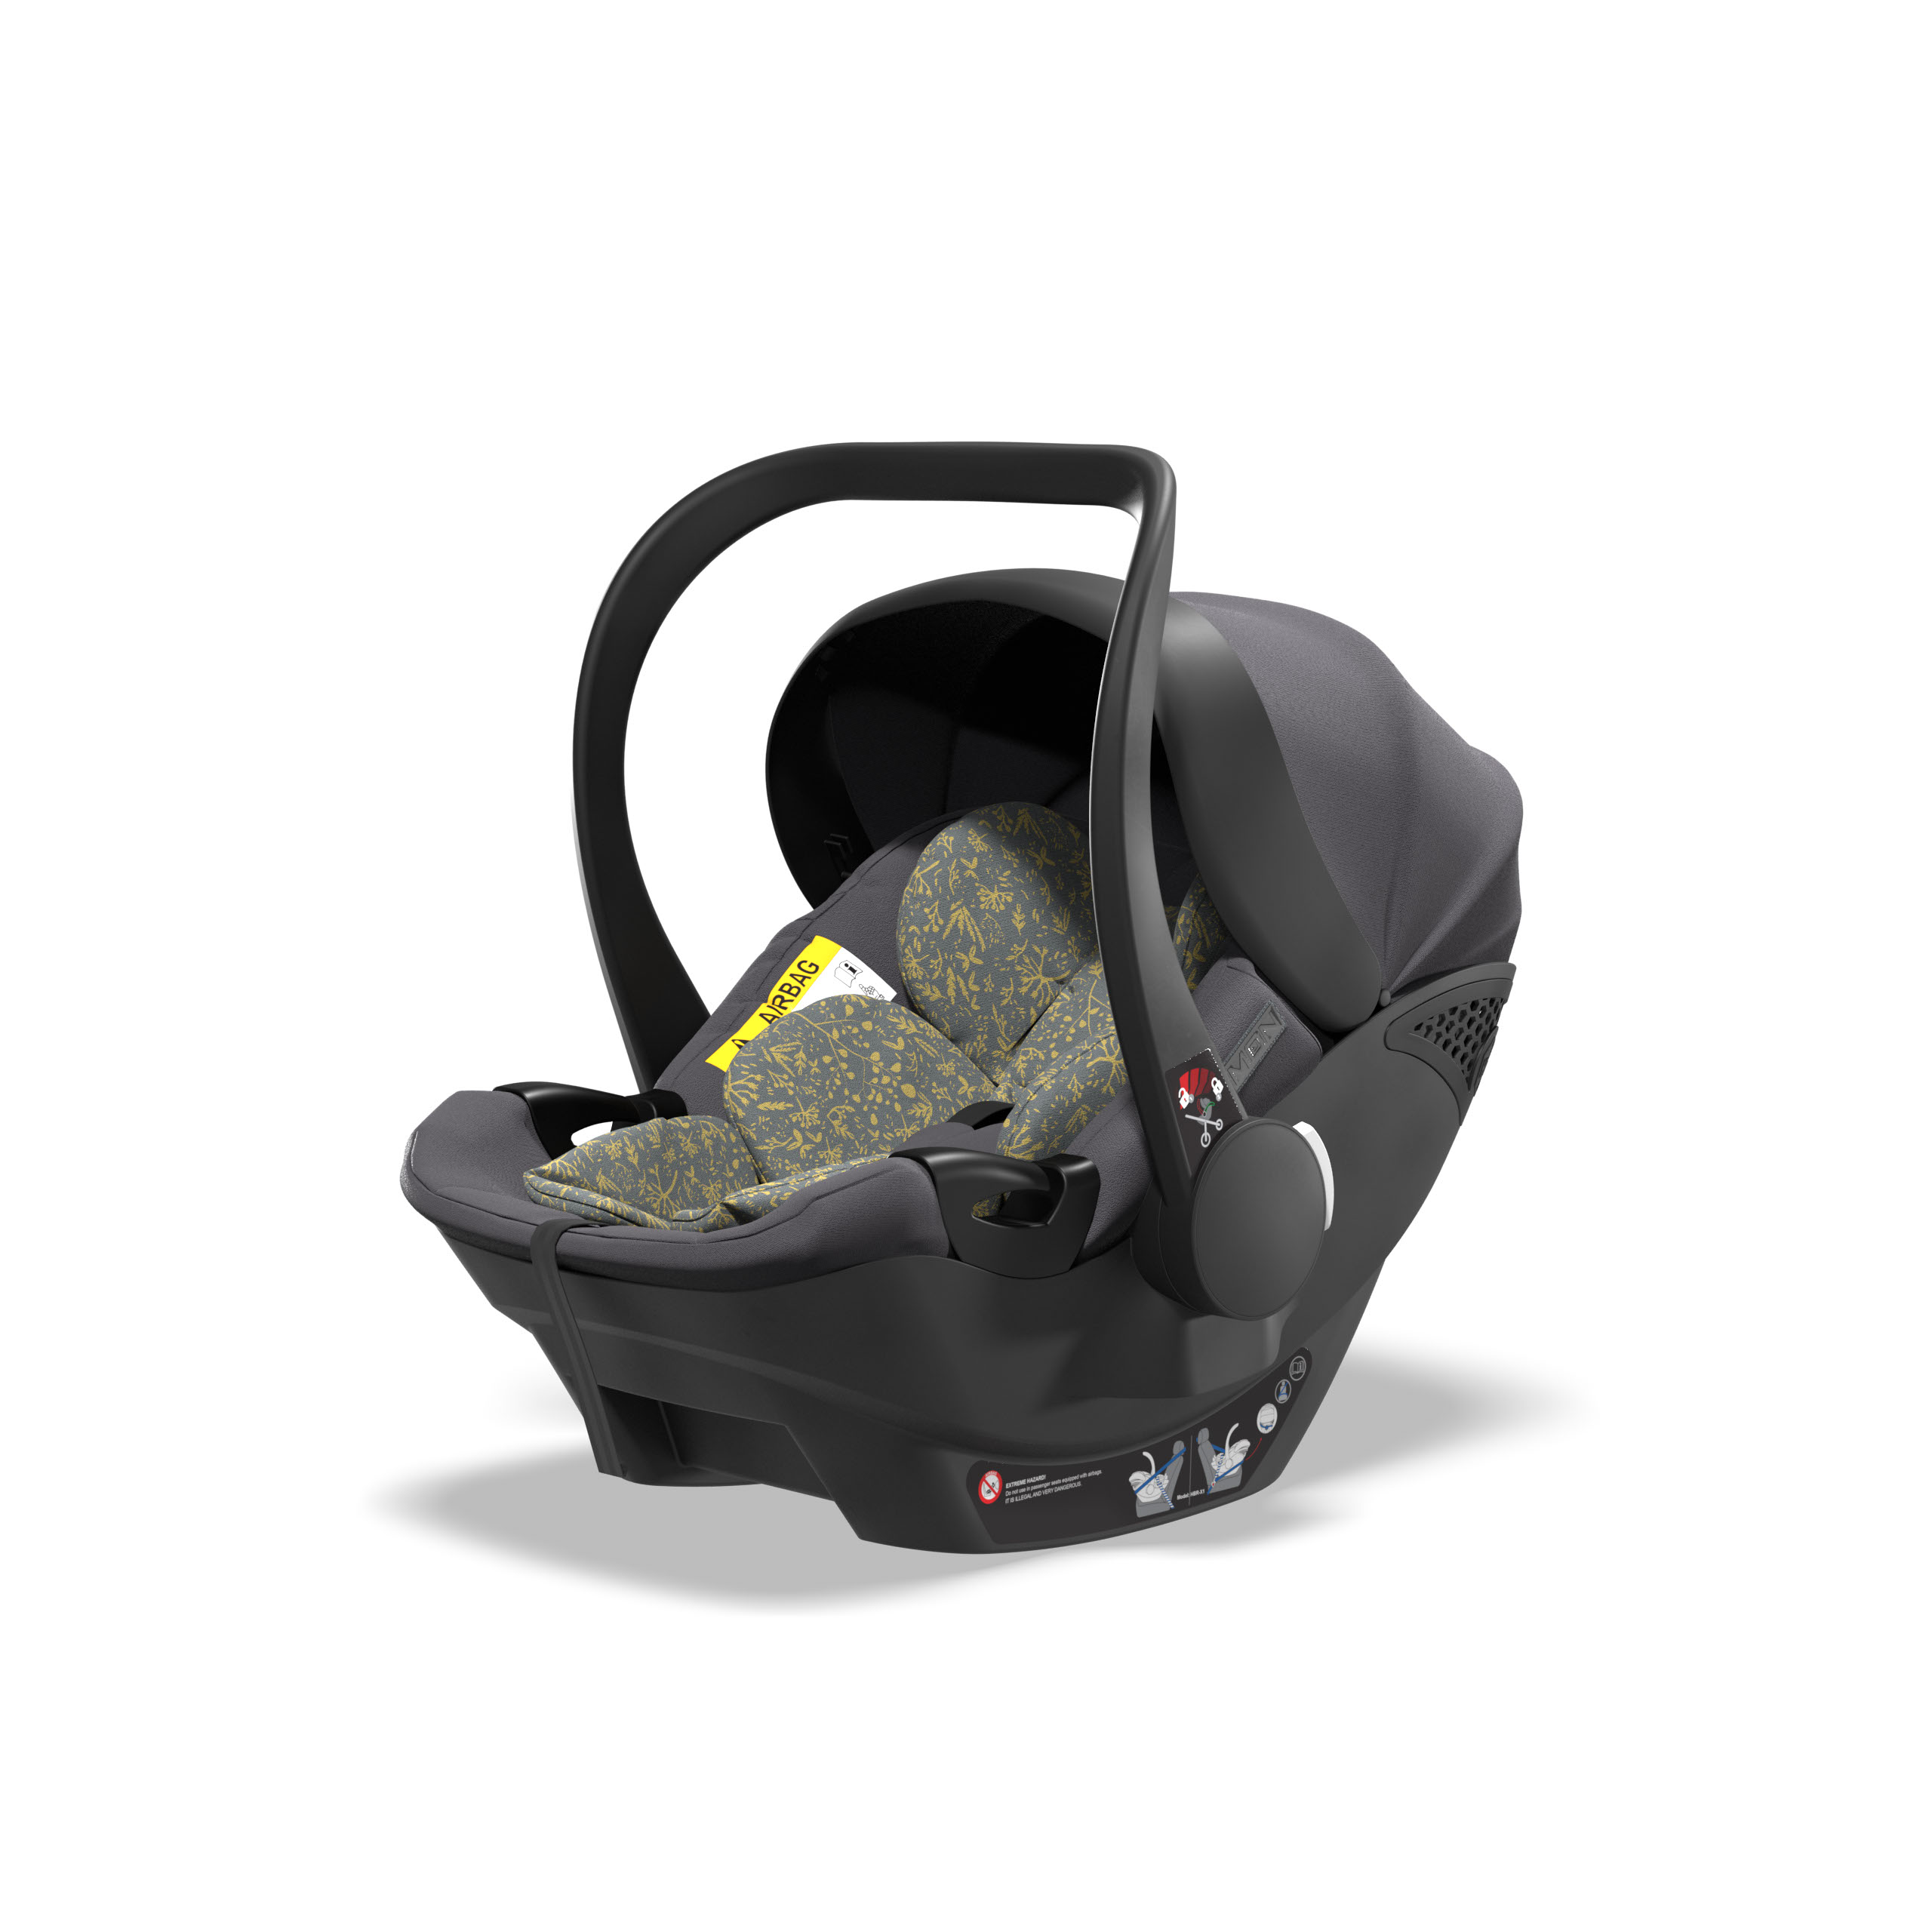 PLUS1 Baby car seat